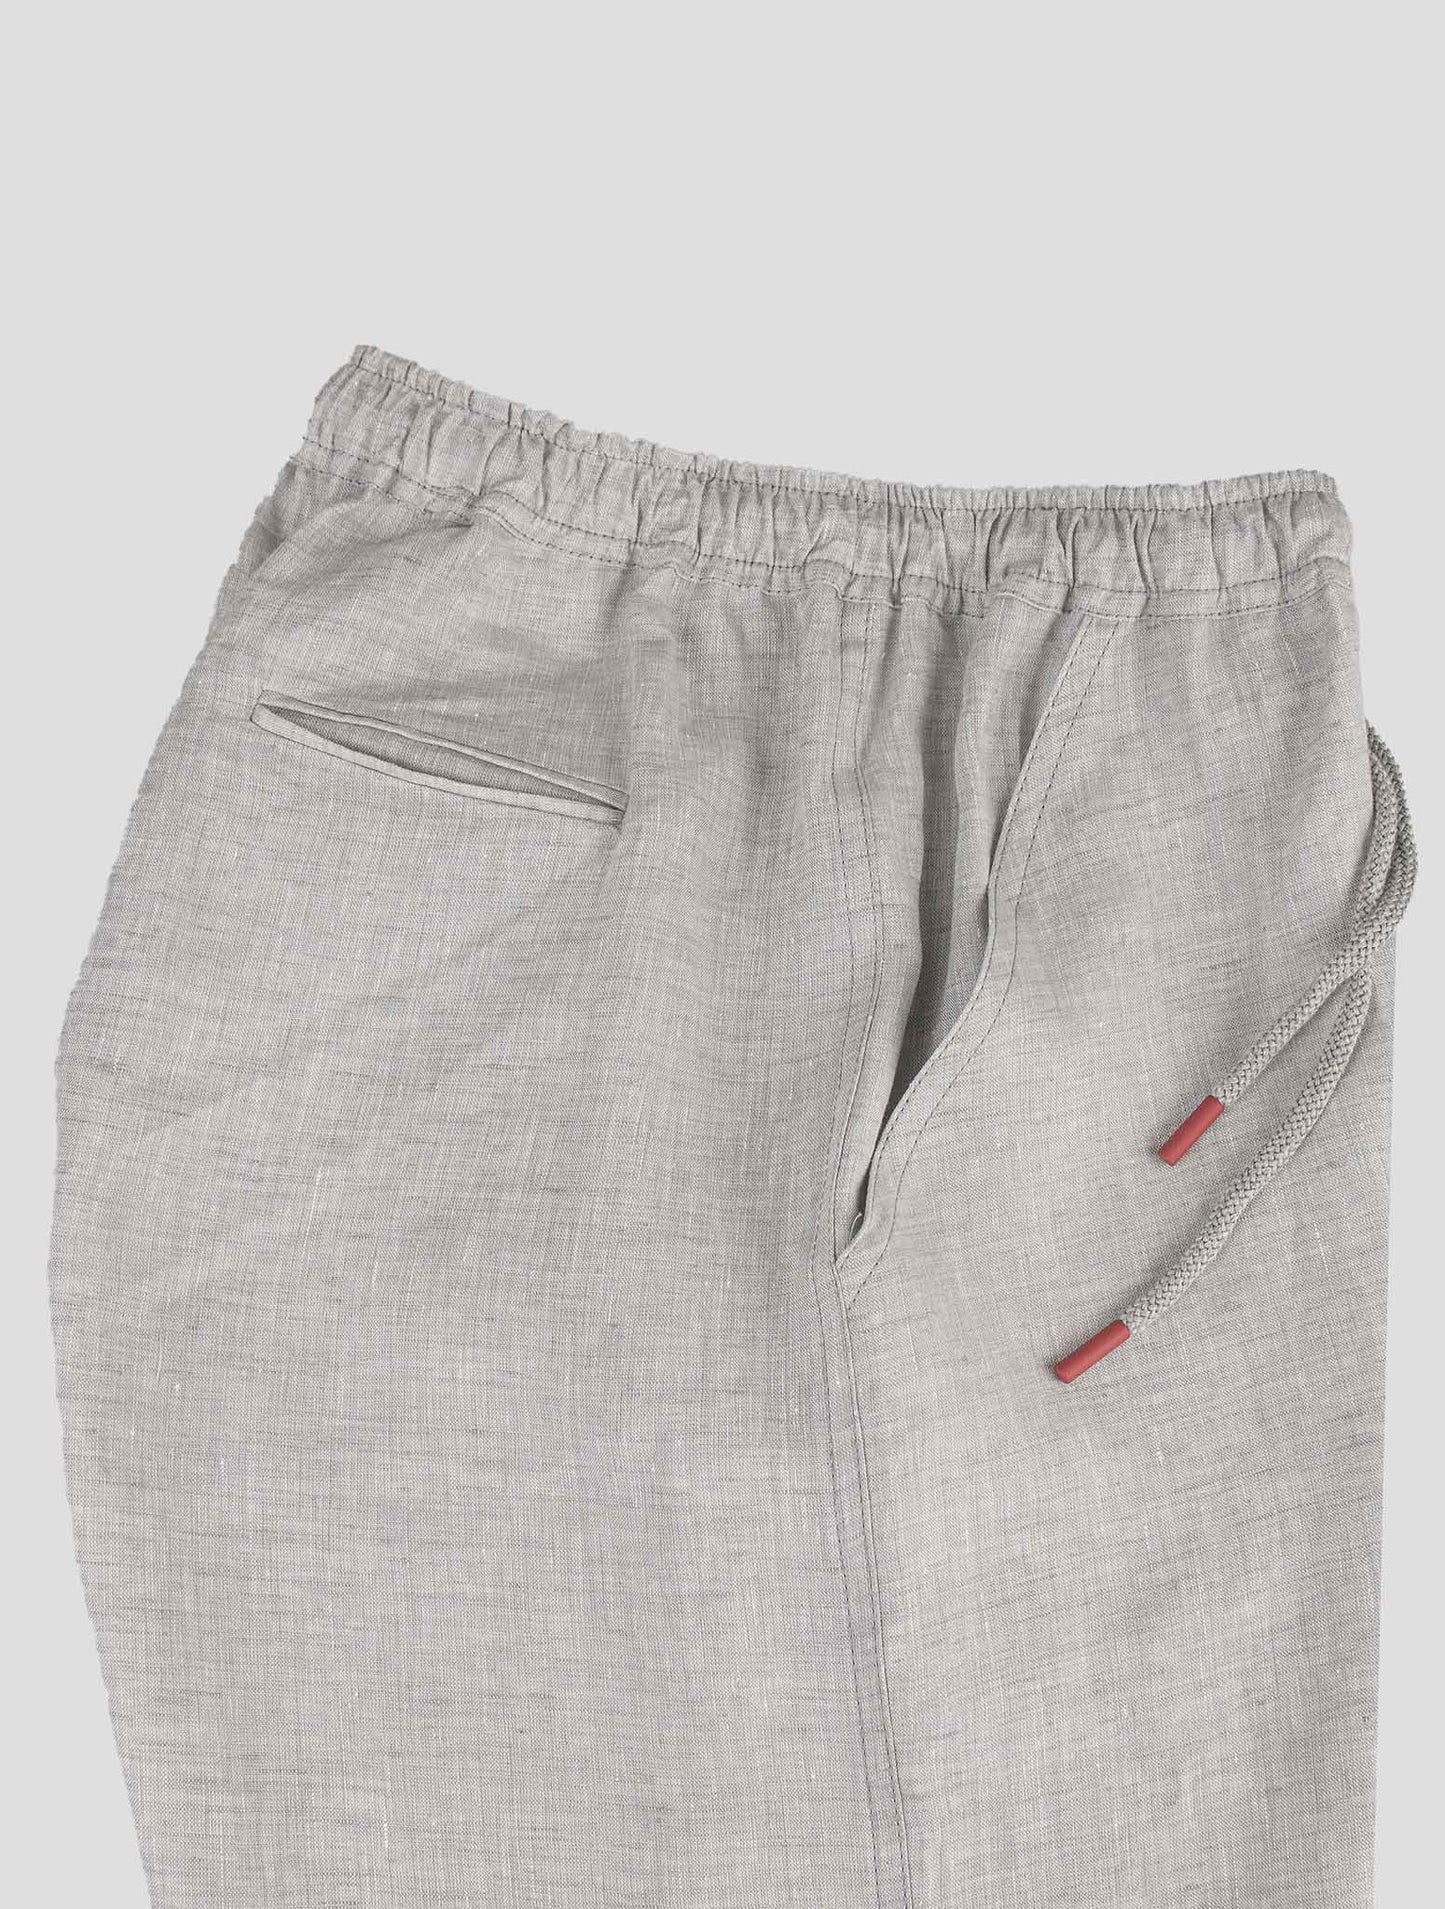 Kiton Light Gray Linen Short Pants